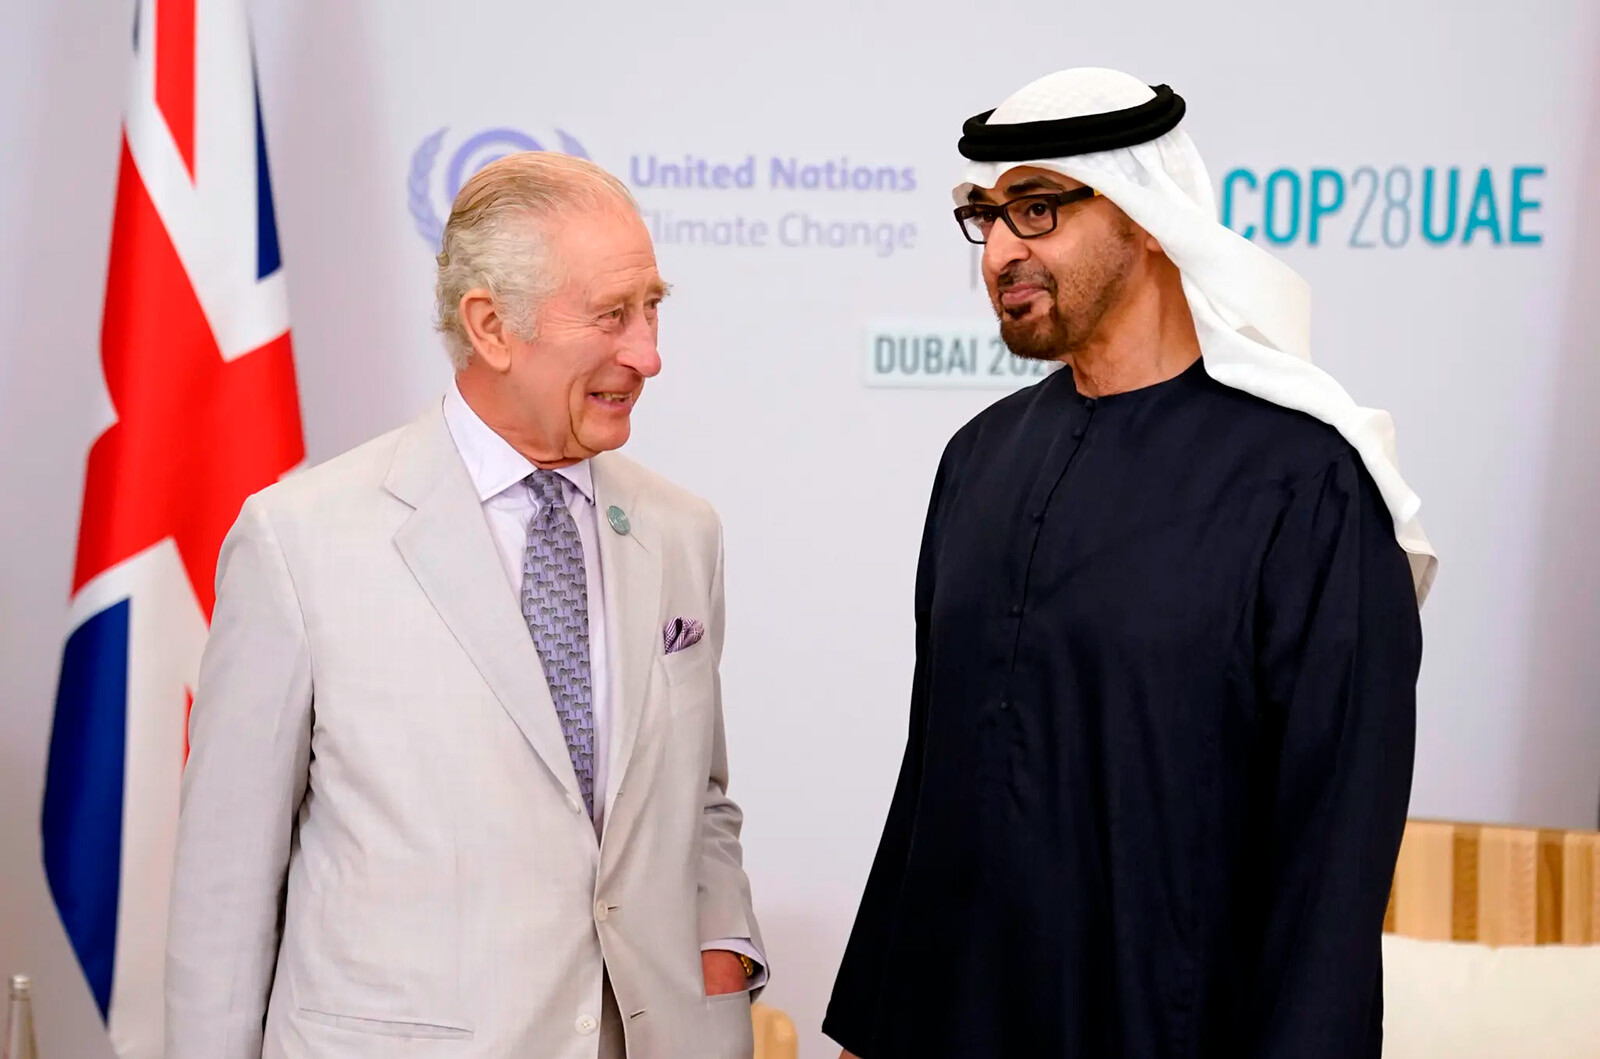 Король Карл III встречается с Мохаммедом бен Заидом Аль Нахайяном в Экспо-Сити в Дубае, во время саммита Cop28 30 ноября 2023 года в Дубае, Объединенные Арабские Эмираты